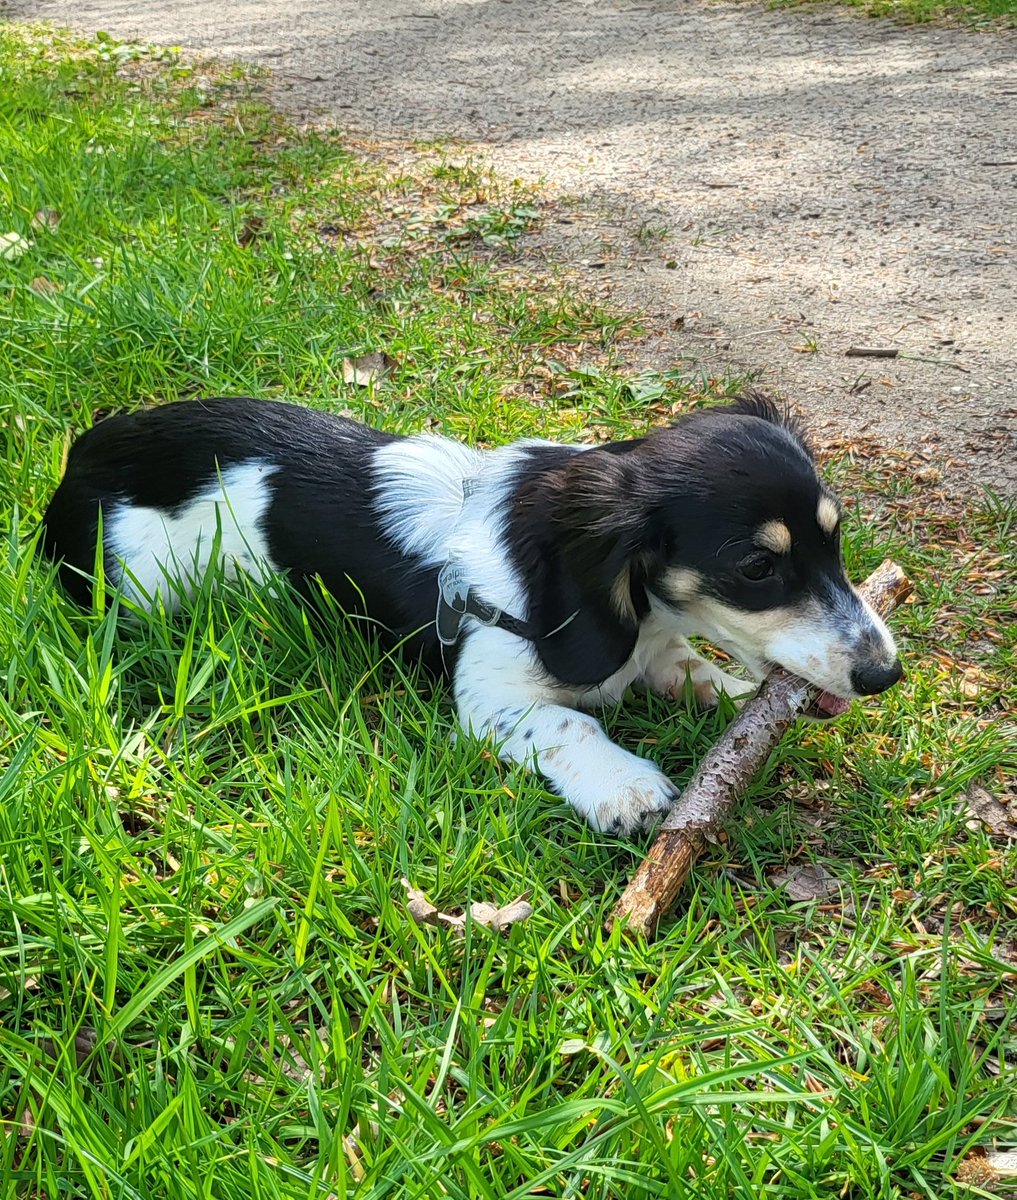 My stick.... 😎🐾
#Bandita #Zelda #DogsofTwittter #Dachshund #Doxie #Teckel